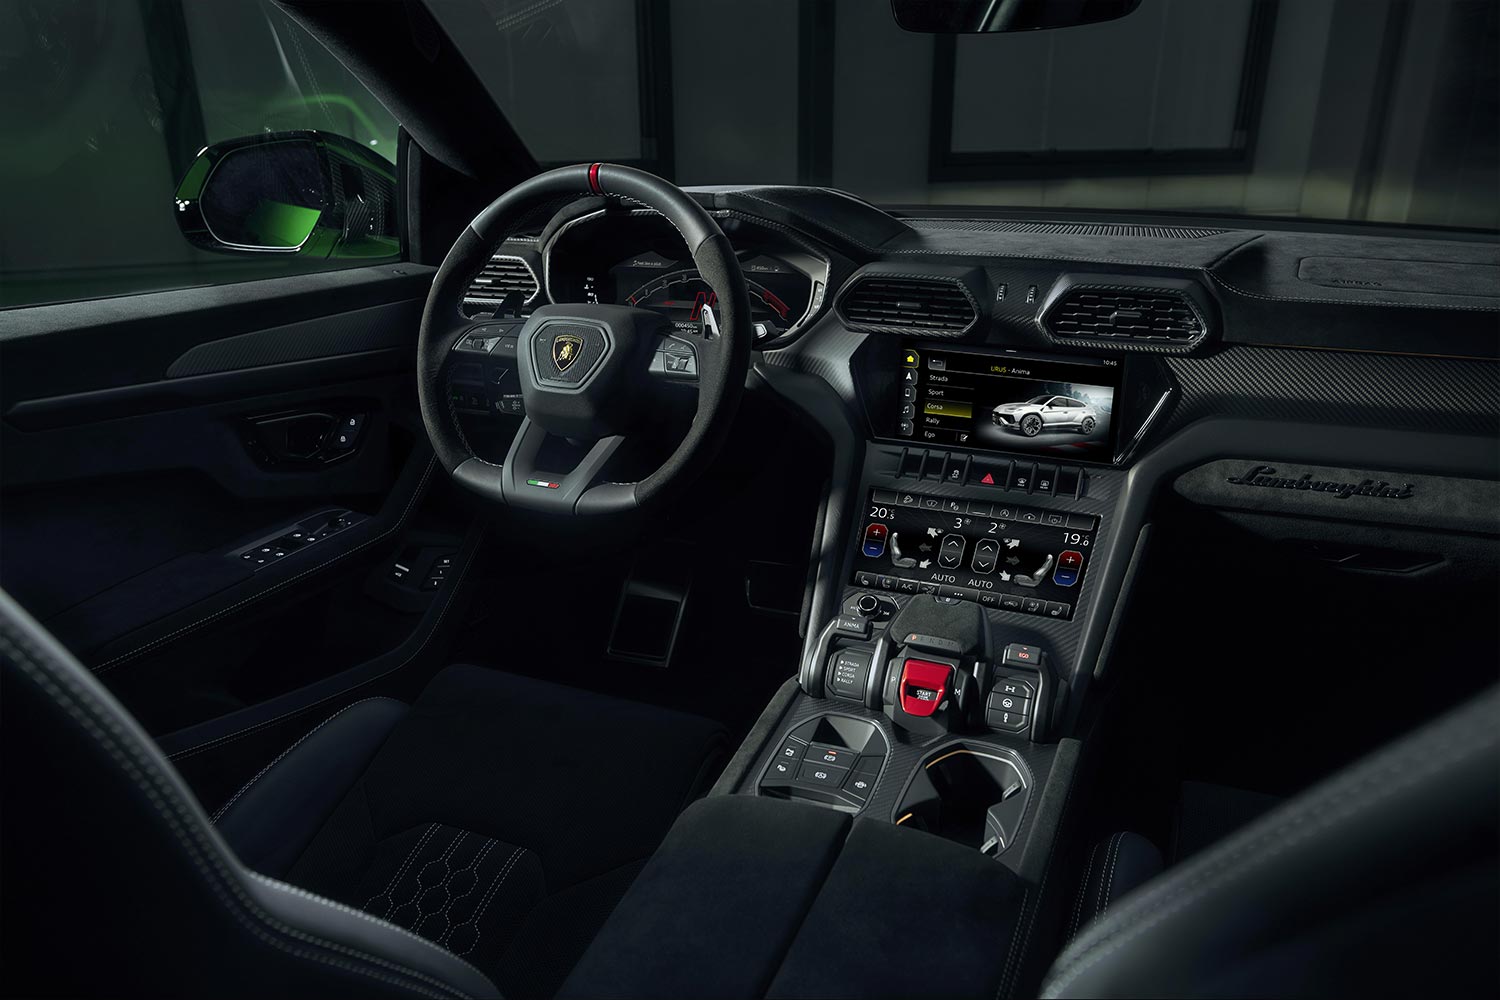 The driver's seat, dashboard and center console of the Lamborghini Urus Performante